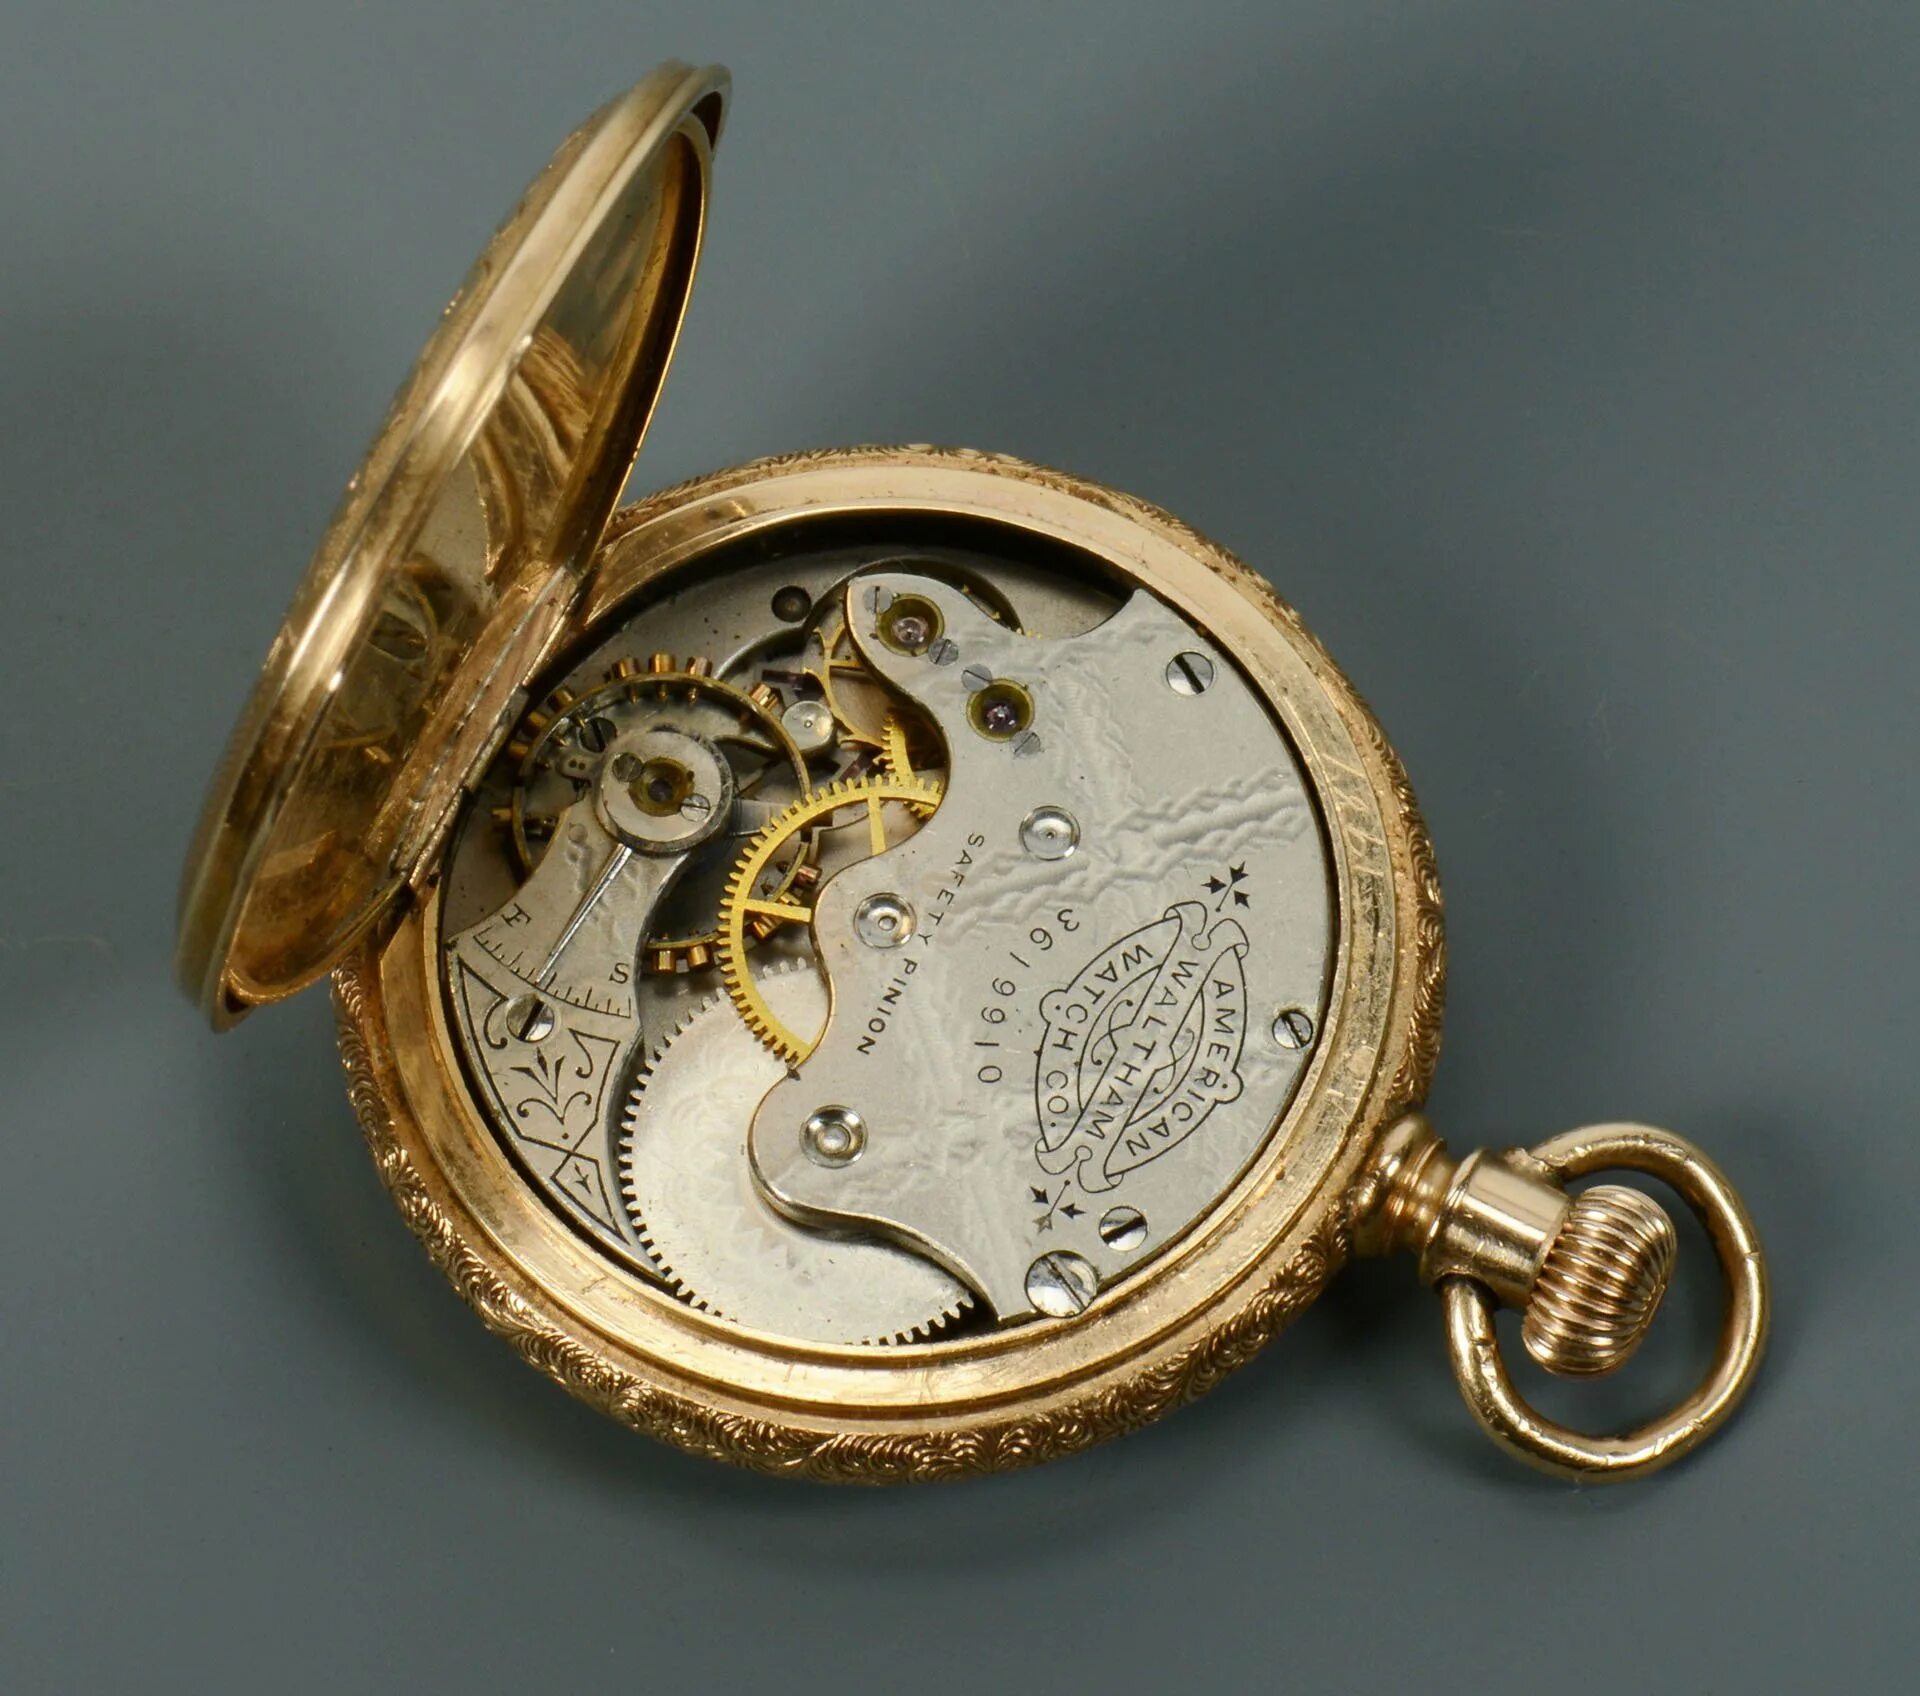 Швейцарские карманные часы Теллус супер. Карманные часы JWC. Карманные часы Raymond Lovis Antimagnetic. Rhein часы карманные.